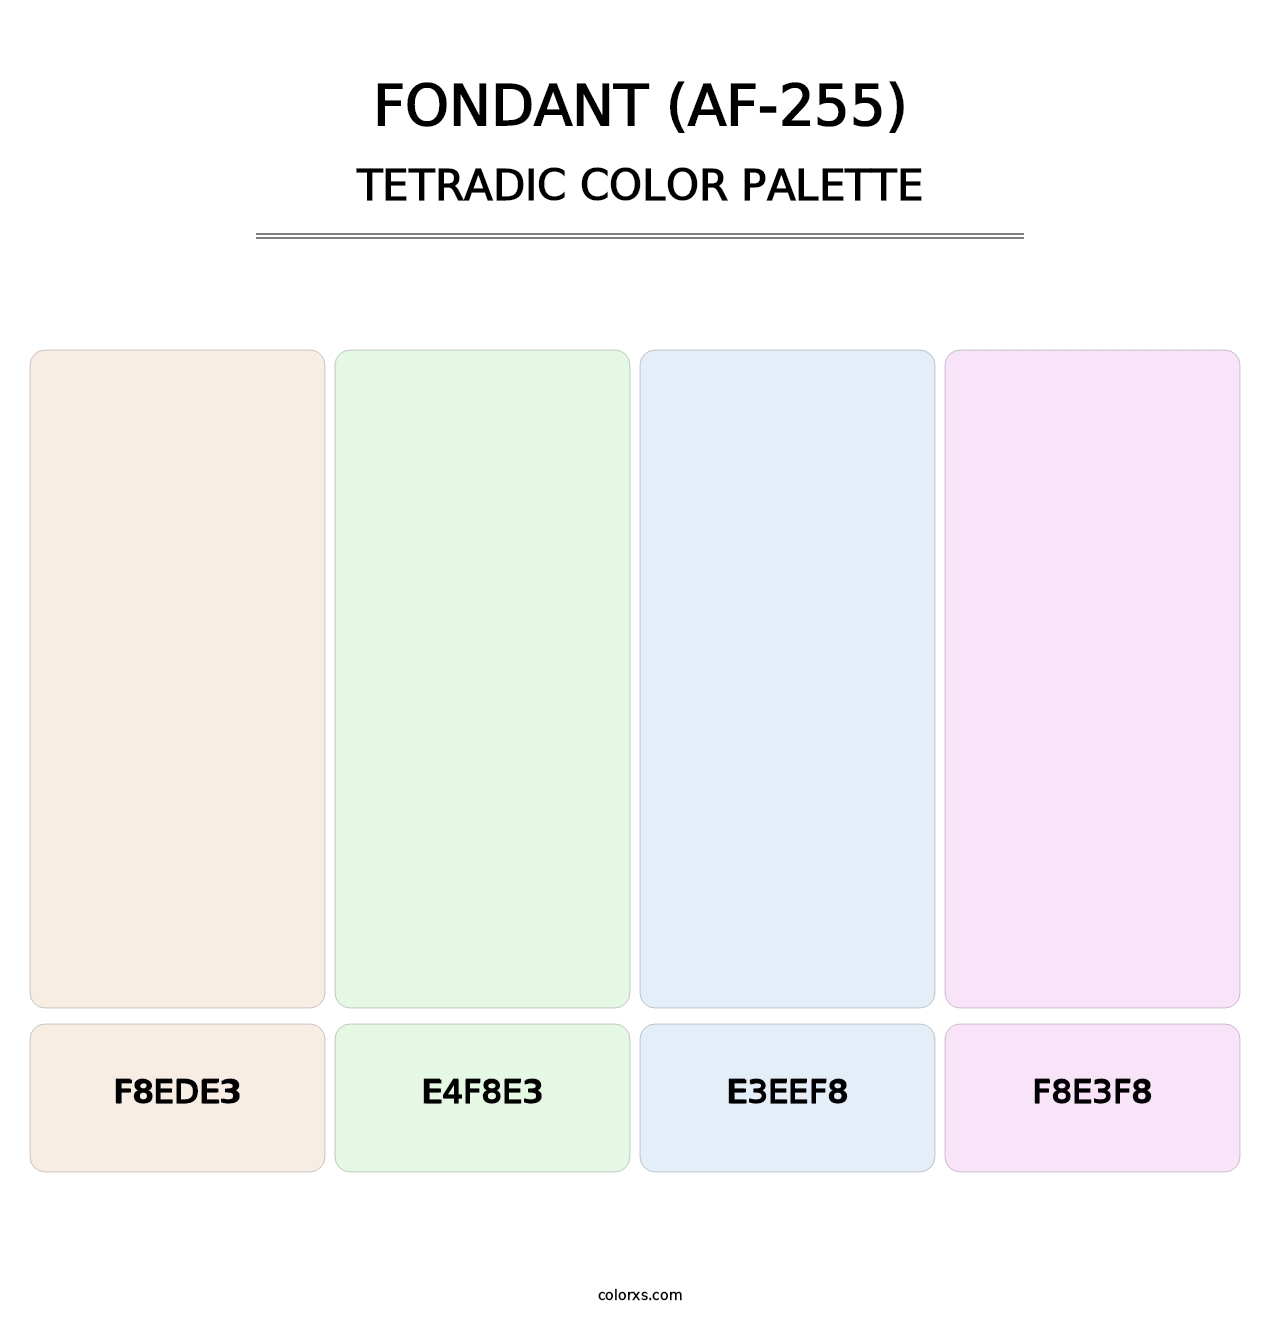 Fondant (AF-255) - Tetradic Color Palette